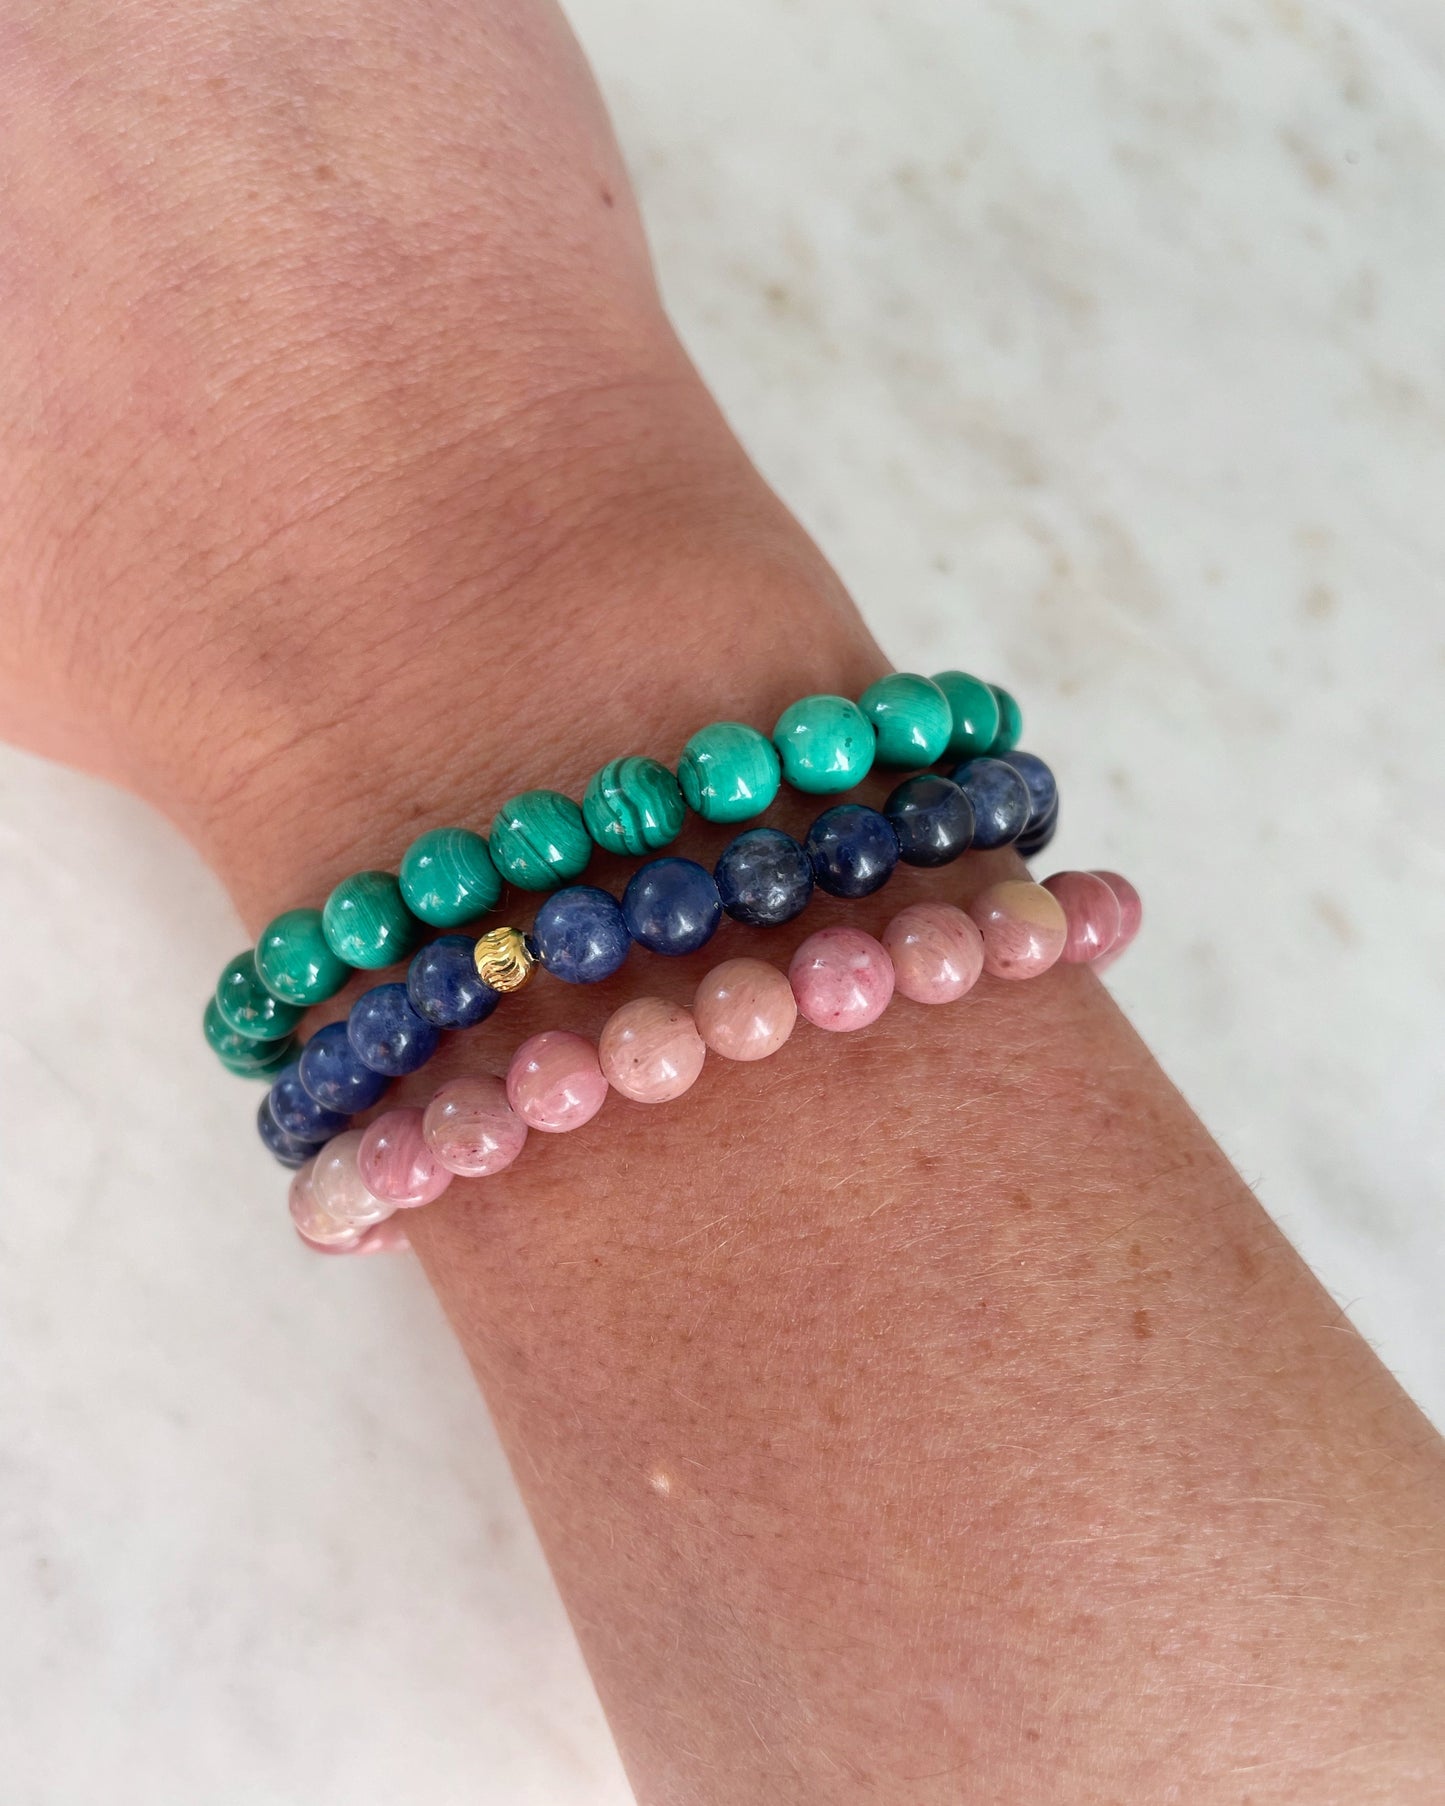 Full Moon - Rhodonite bracelet for love, healing and balance